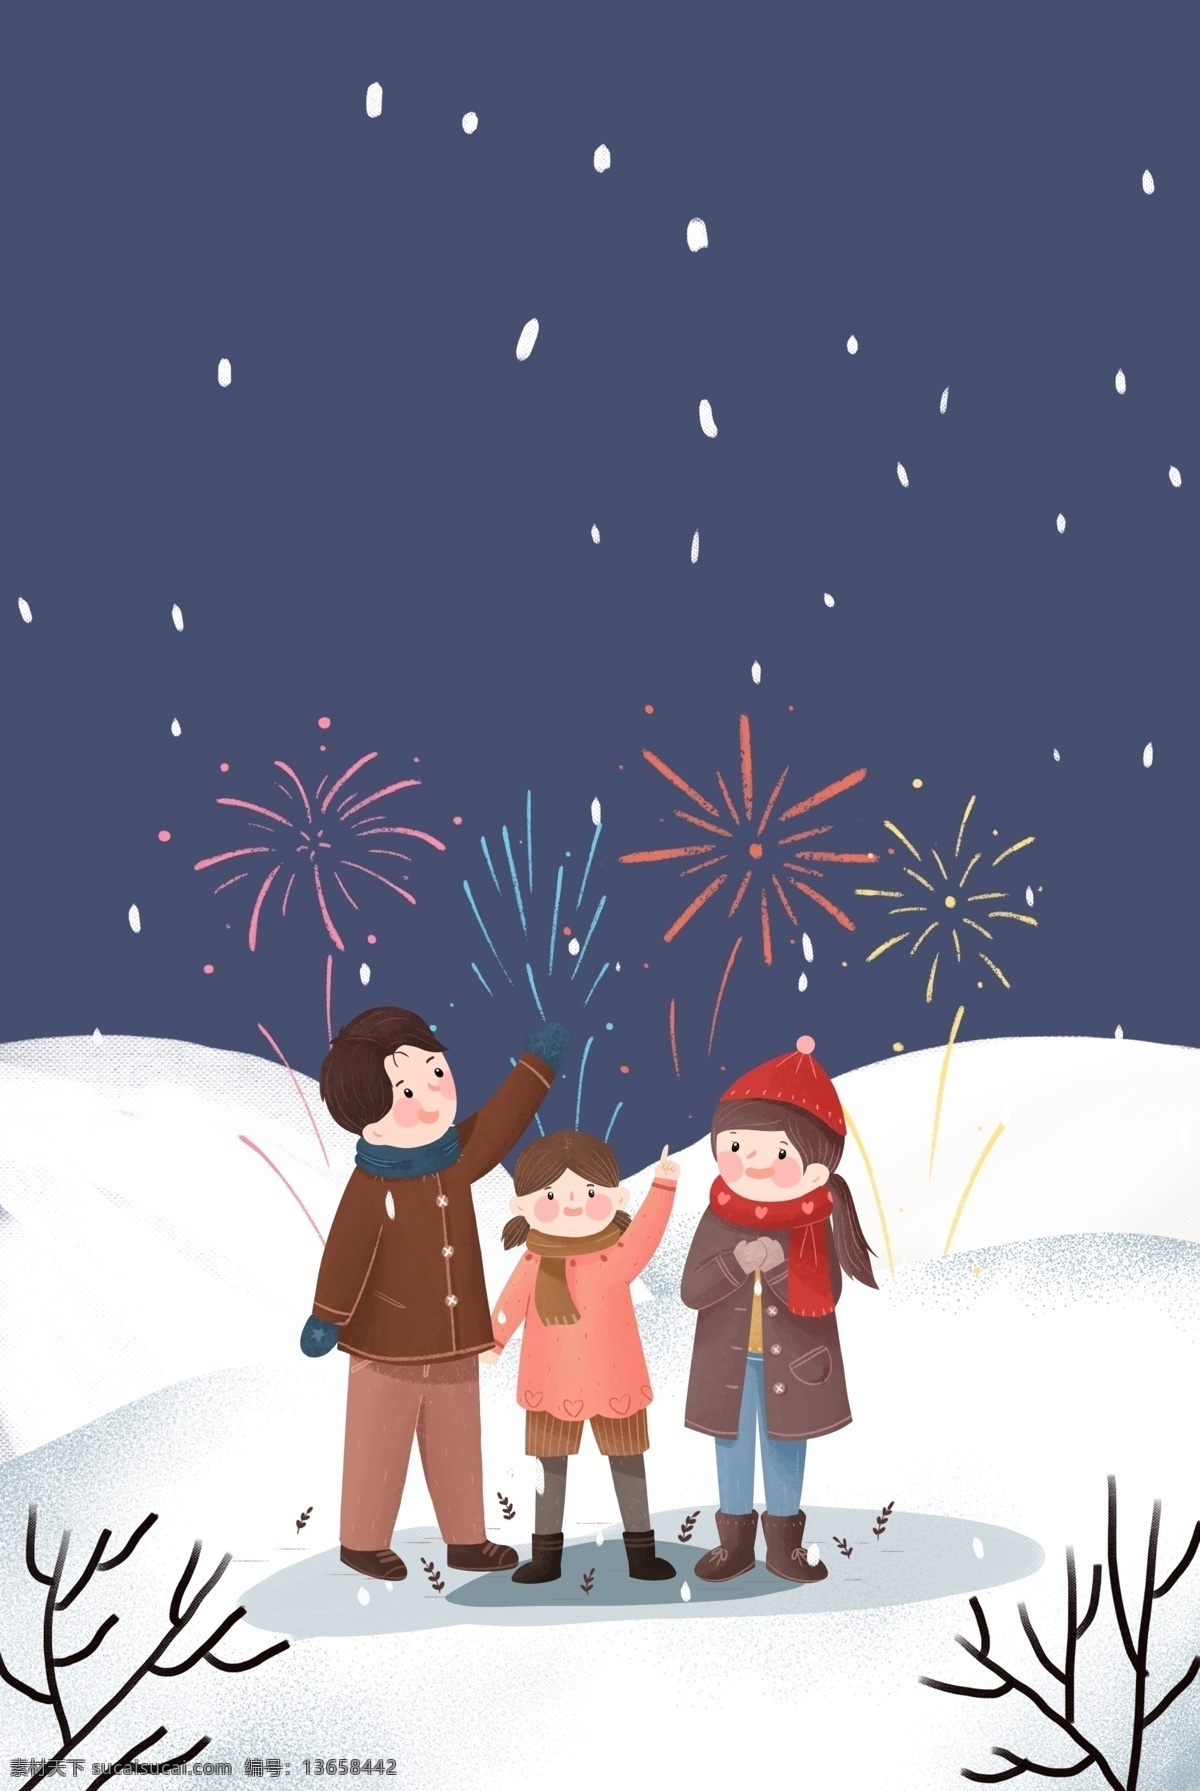 2019 新年 相伴 一家人 陪伴 家人 人物 温暖 烟花 植物 雪地 插画风 促销海报